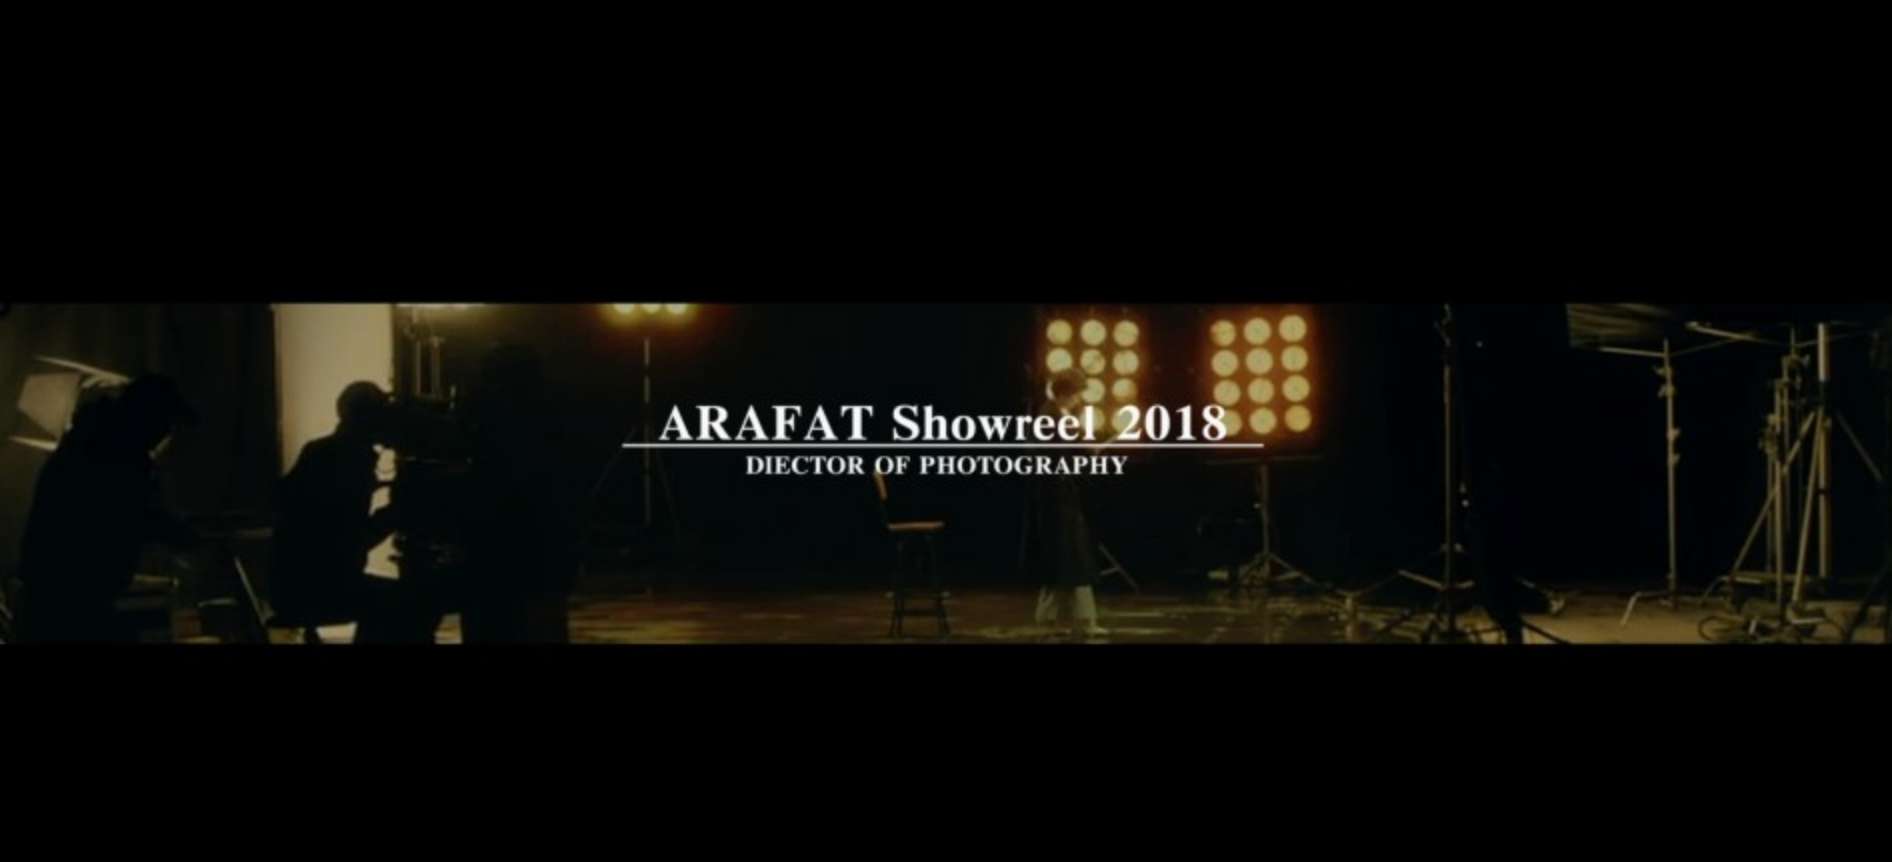 ARAFAT Showreel 